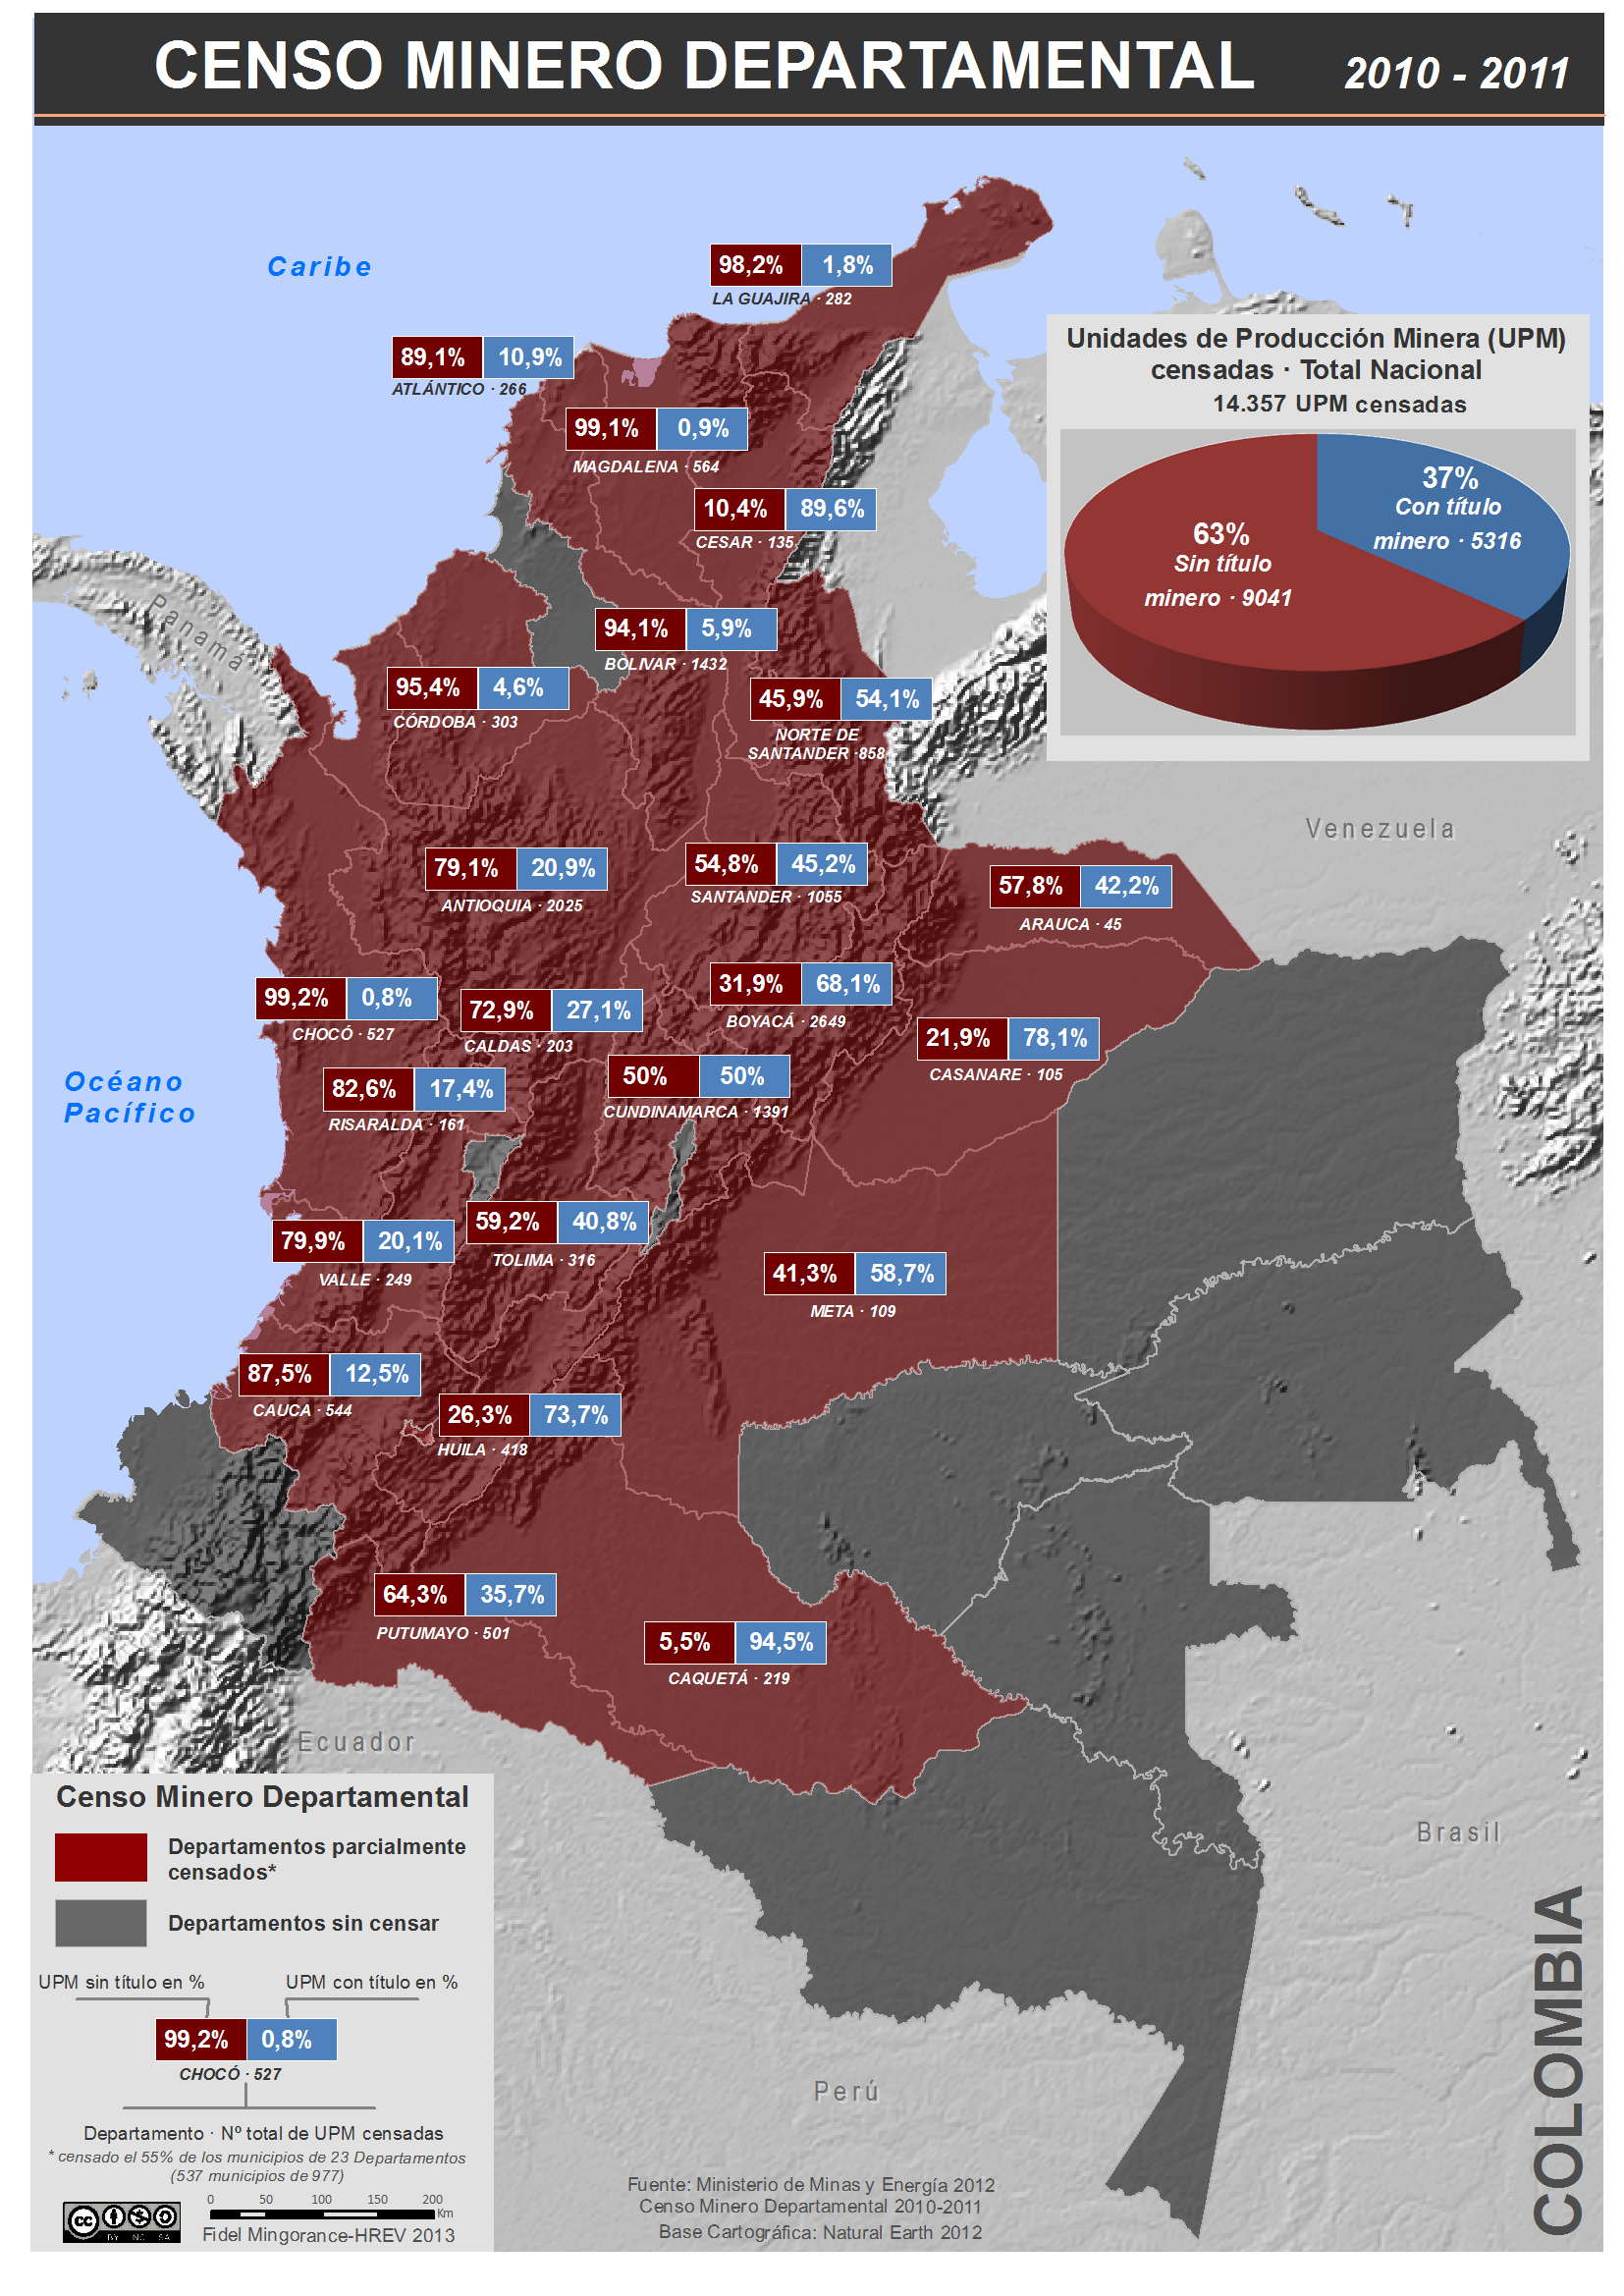 mapa del censo minero departamental colombiano 2010-2011